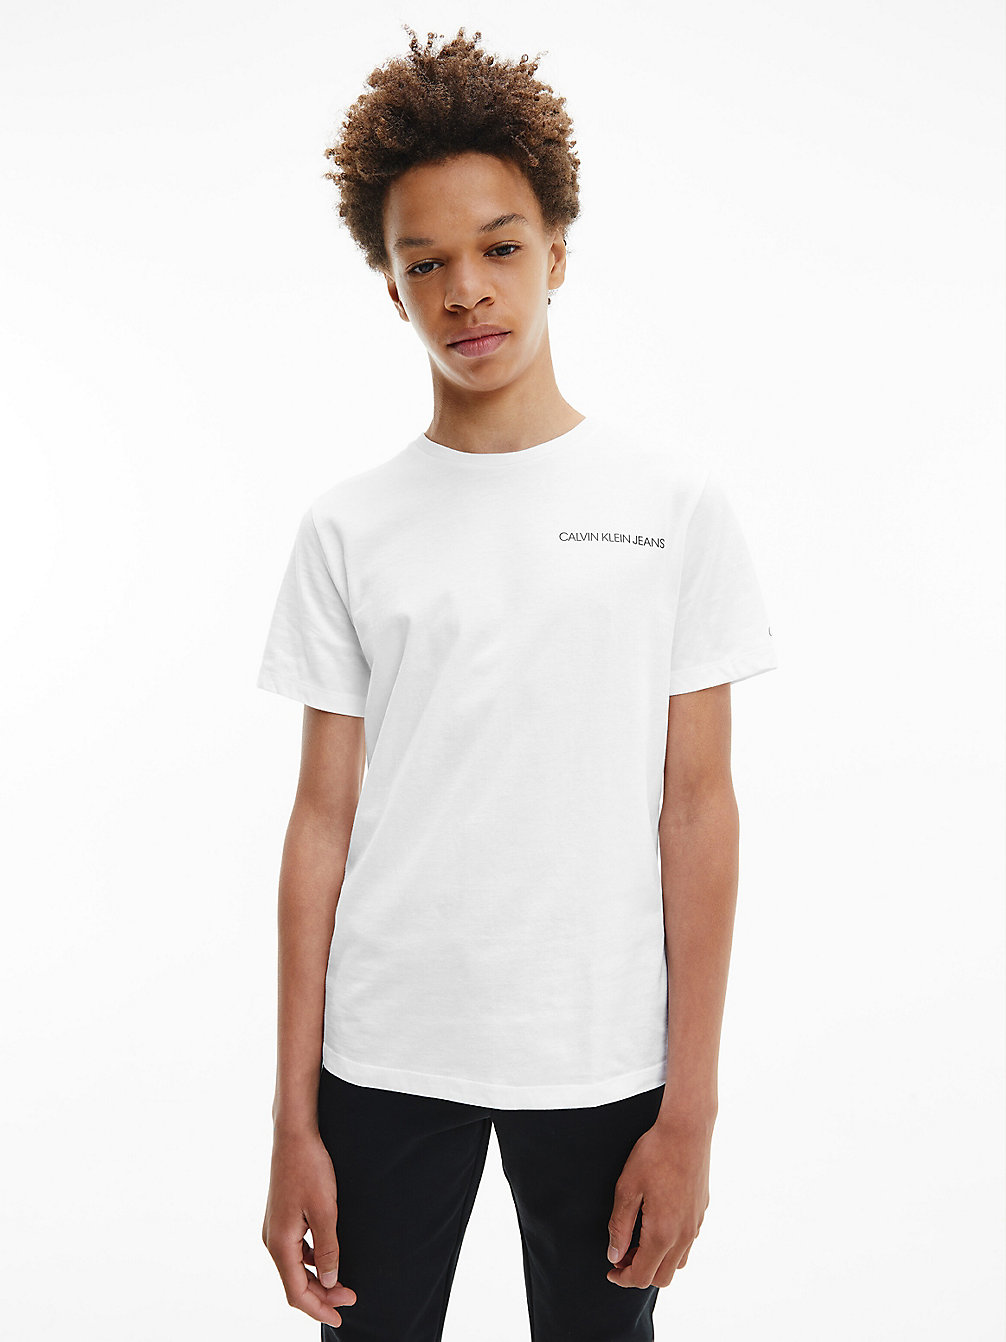 T-Shirt En Coton Bio > BRIGHT WHITE > undefined garcons > Calvin Klein